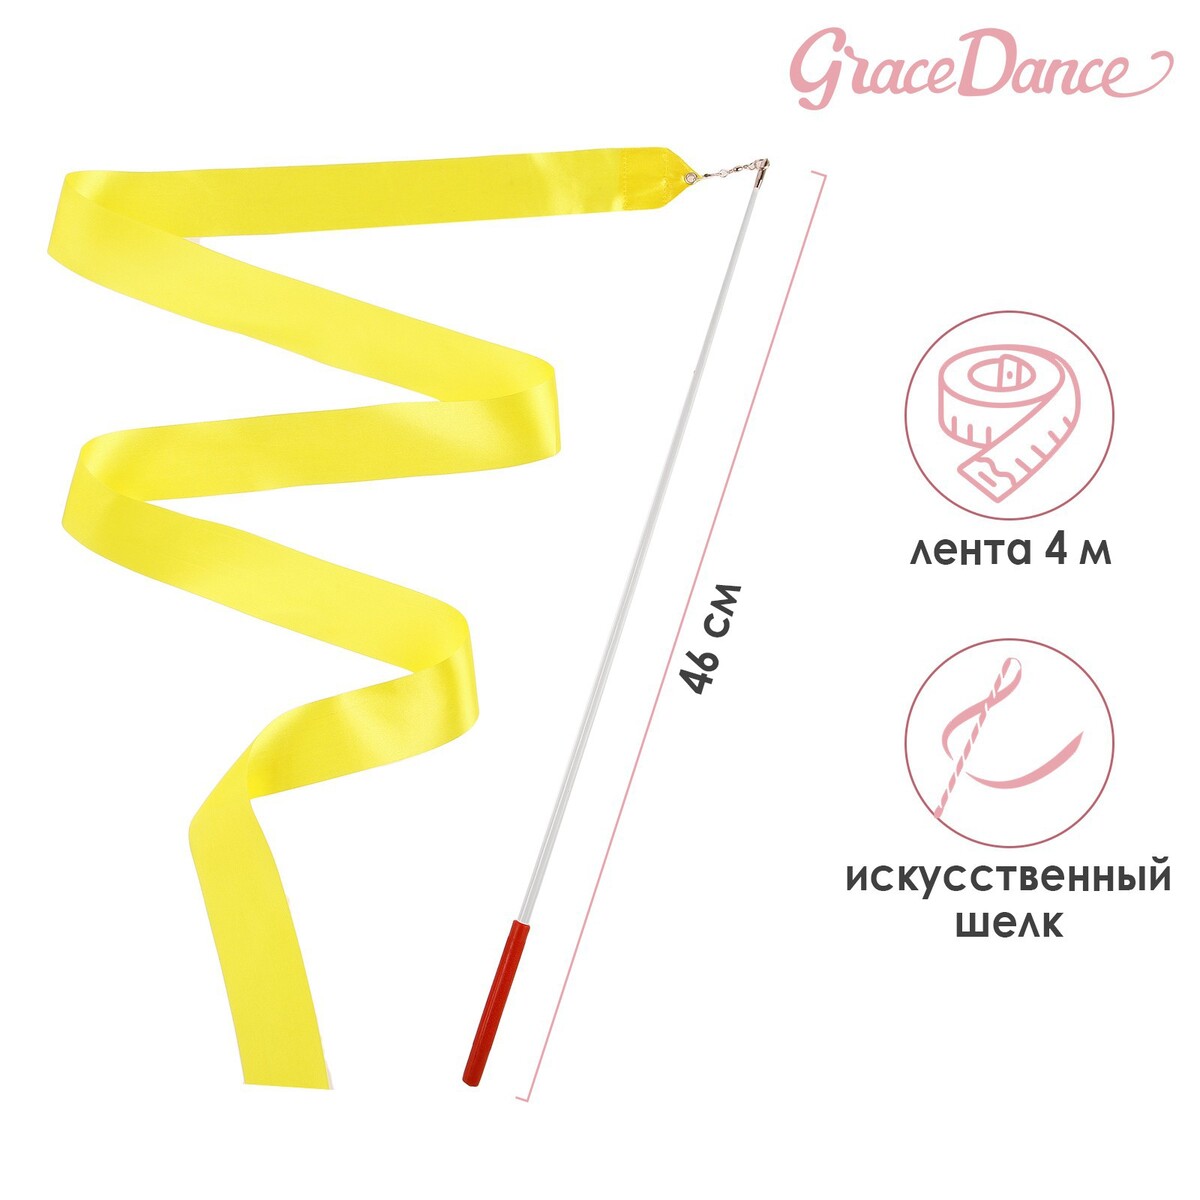 Лента для художественной гимнастики с палочкой grace dance, 4 м, цвет желтый лента для художественной гимнастики с палочкой grace dance 4 м желтый